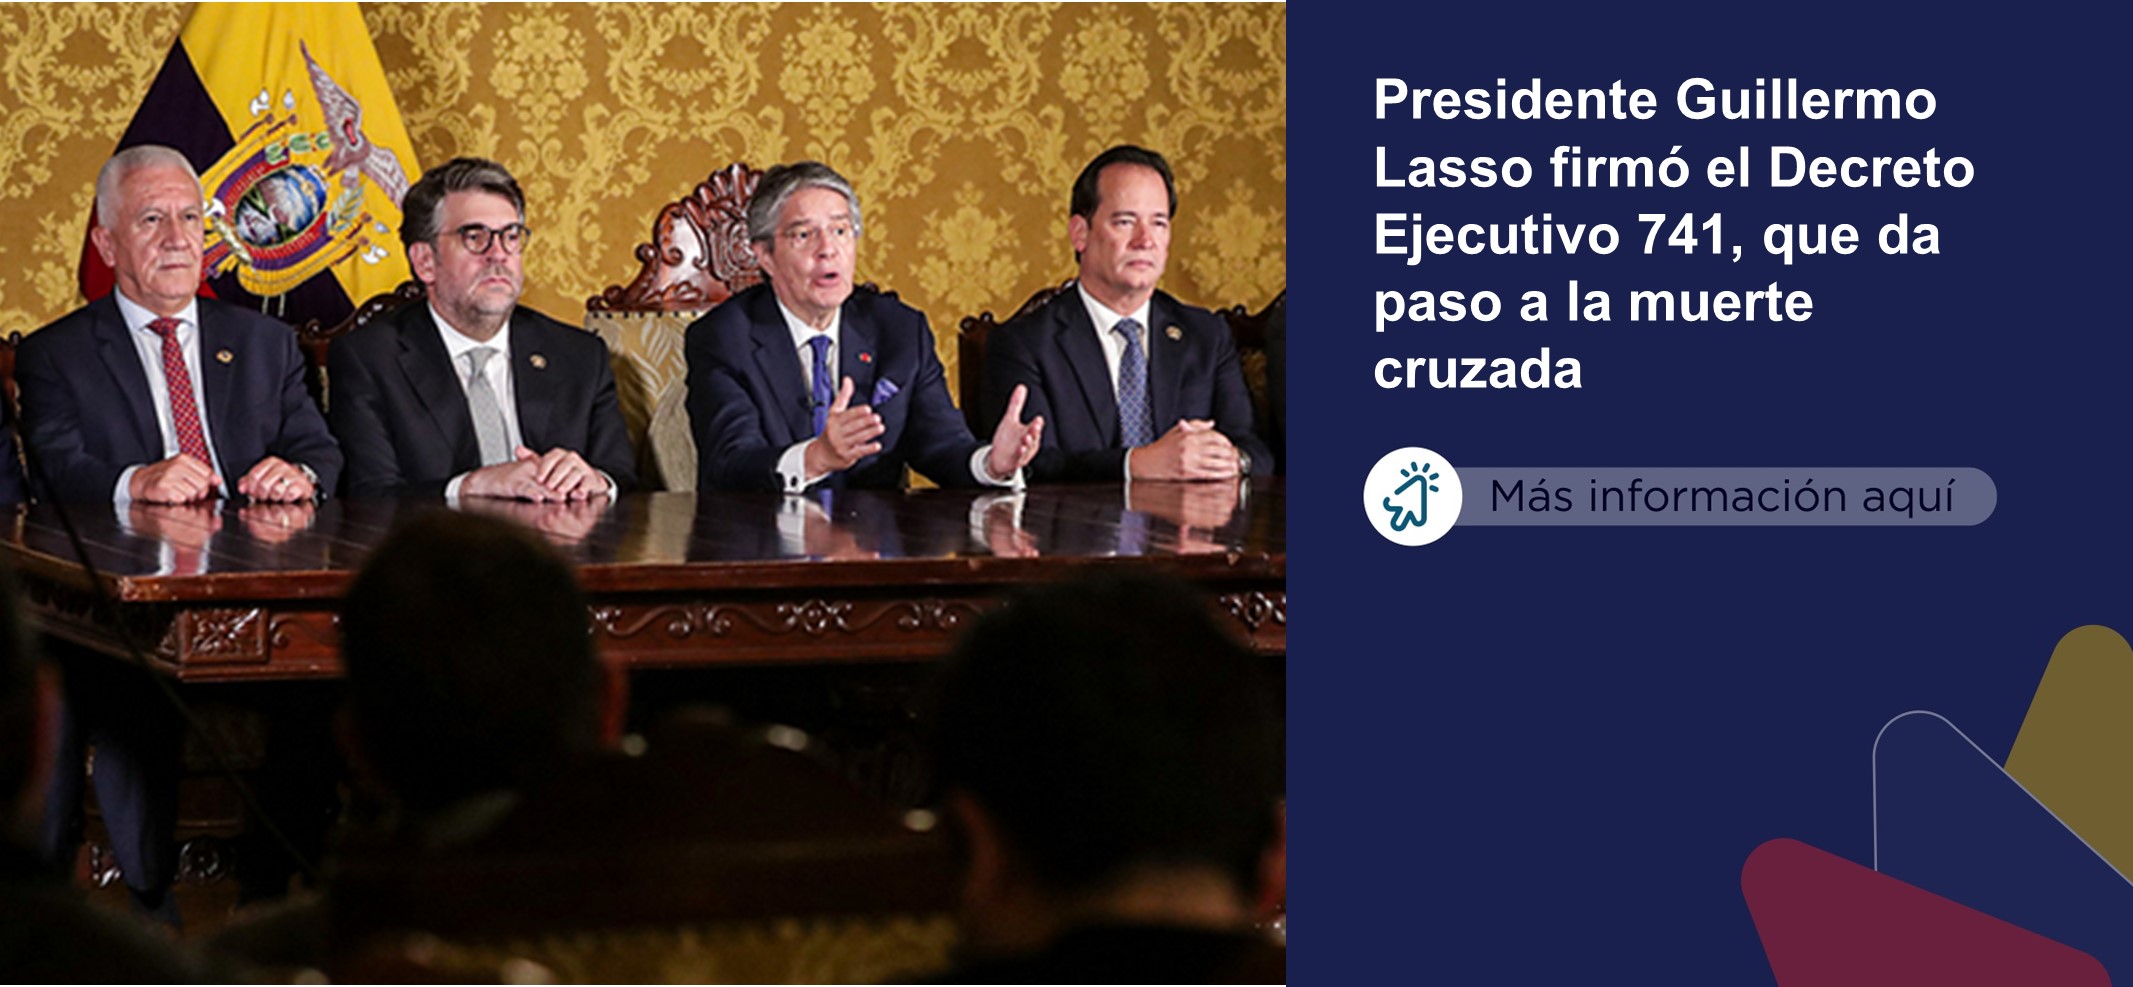 El Presidente Guillermo Lasso anunció la firma del Decreto Ejecutivo No. 741, mediante el cual aplicó el artículo 148 de la Constitución de la República que le otorga la facultad de disolver la Asamblea Nacional por grave crisis política y conmoción interna.